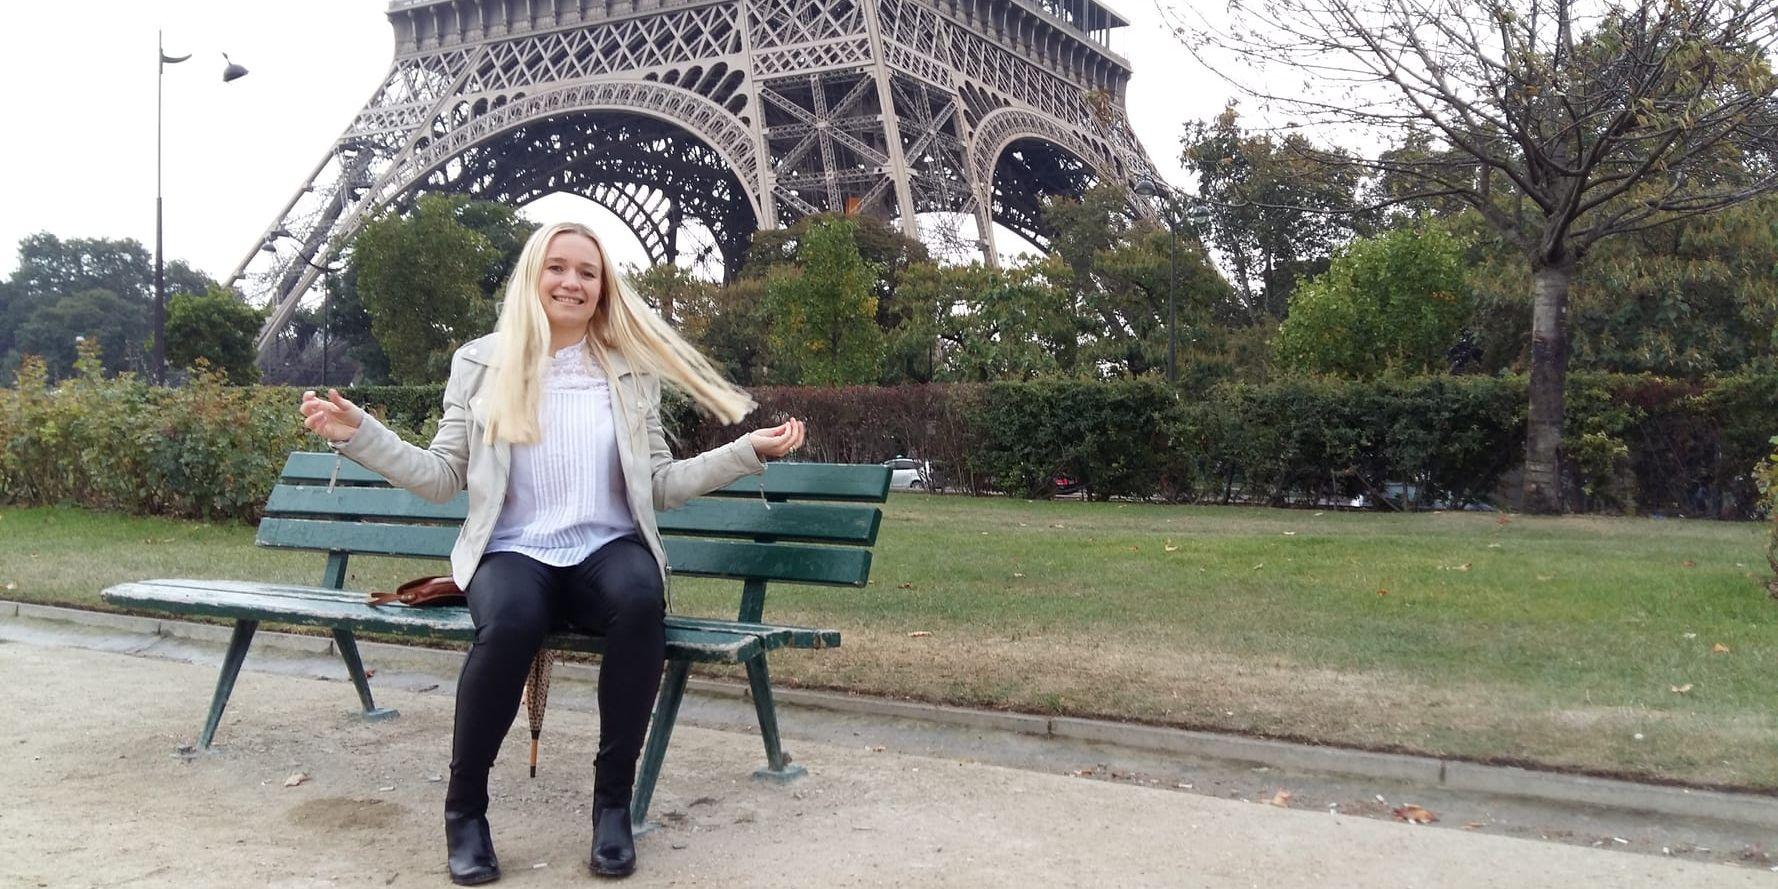 Anaëlle Couture tar en vilopaus vid foten av det 324 meter höga Eiffeltornet, invigt 1889. Till vardags har hon sin arbetsplats på en restaurang i denna, den kanske allra mest berömda turistattraktionen i Paris. Parallellt med jobbet läser hon också socialpsykologi och är snart färdig beteendevetare.